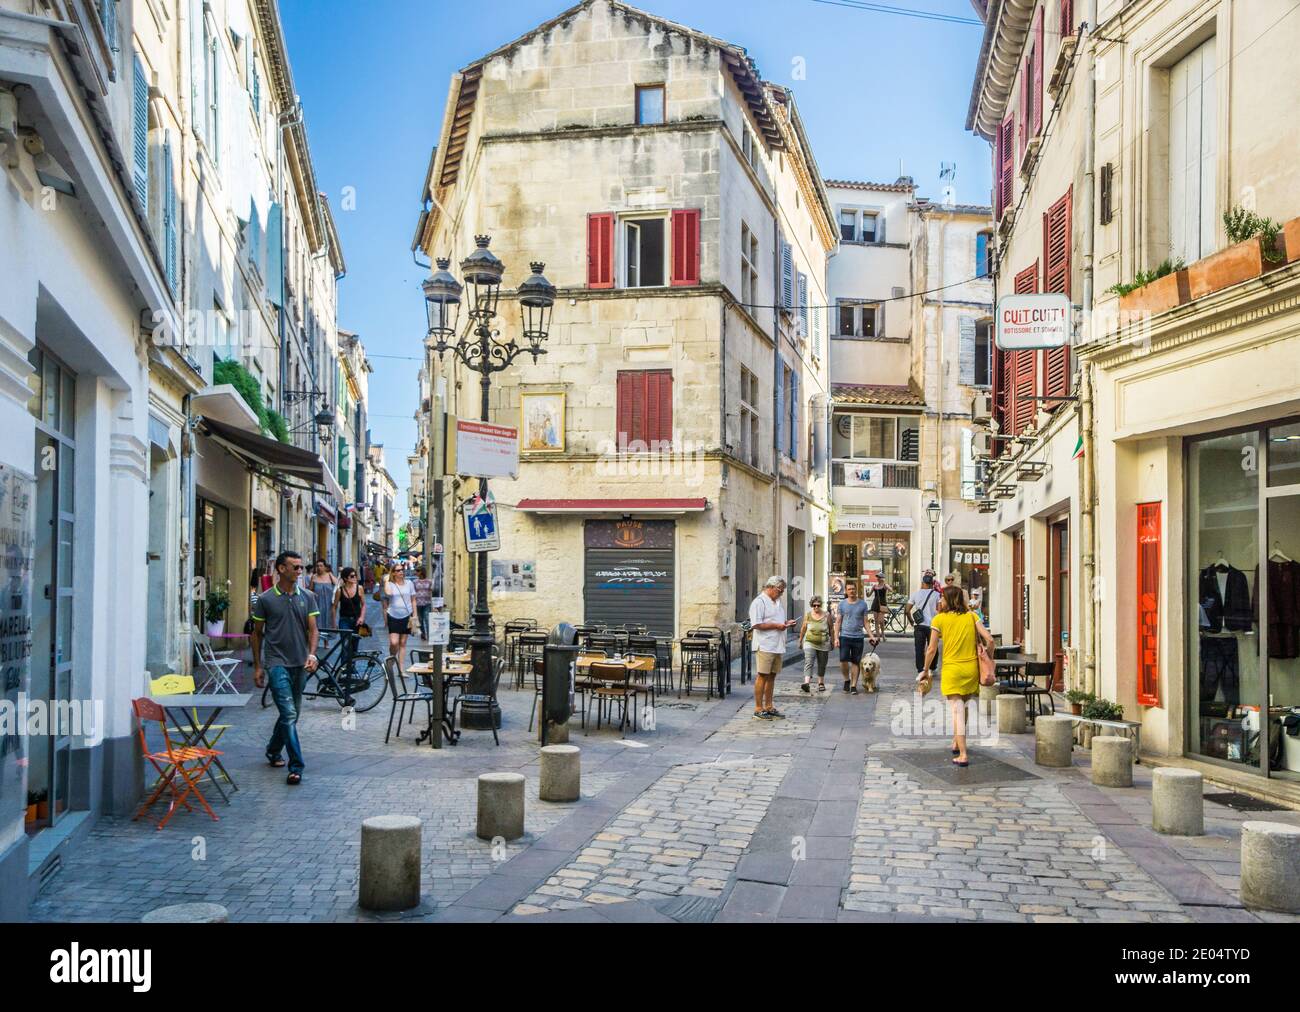 Rue de l'Hôtel de ville and Rue du Dr Fanton, narrow but livly streets in the ancient city of Arles, Bouches-du-Rhône department, Southern France Stock Photo